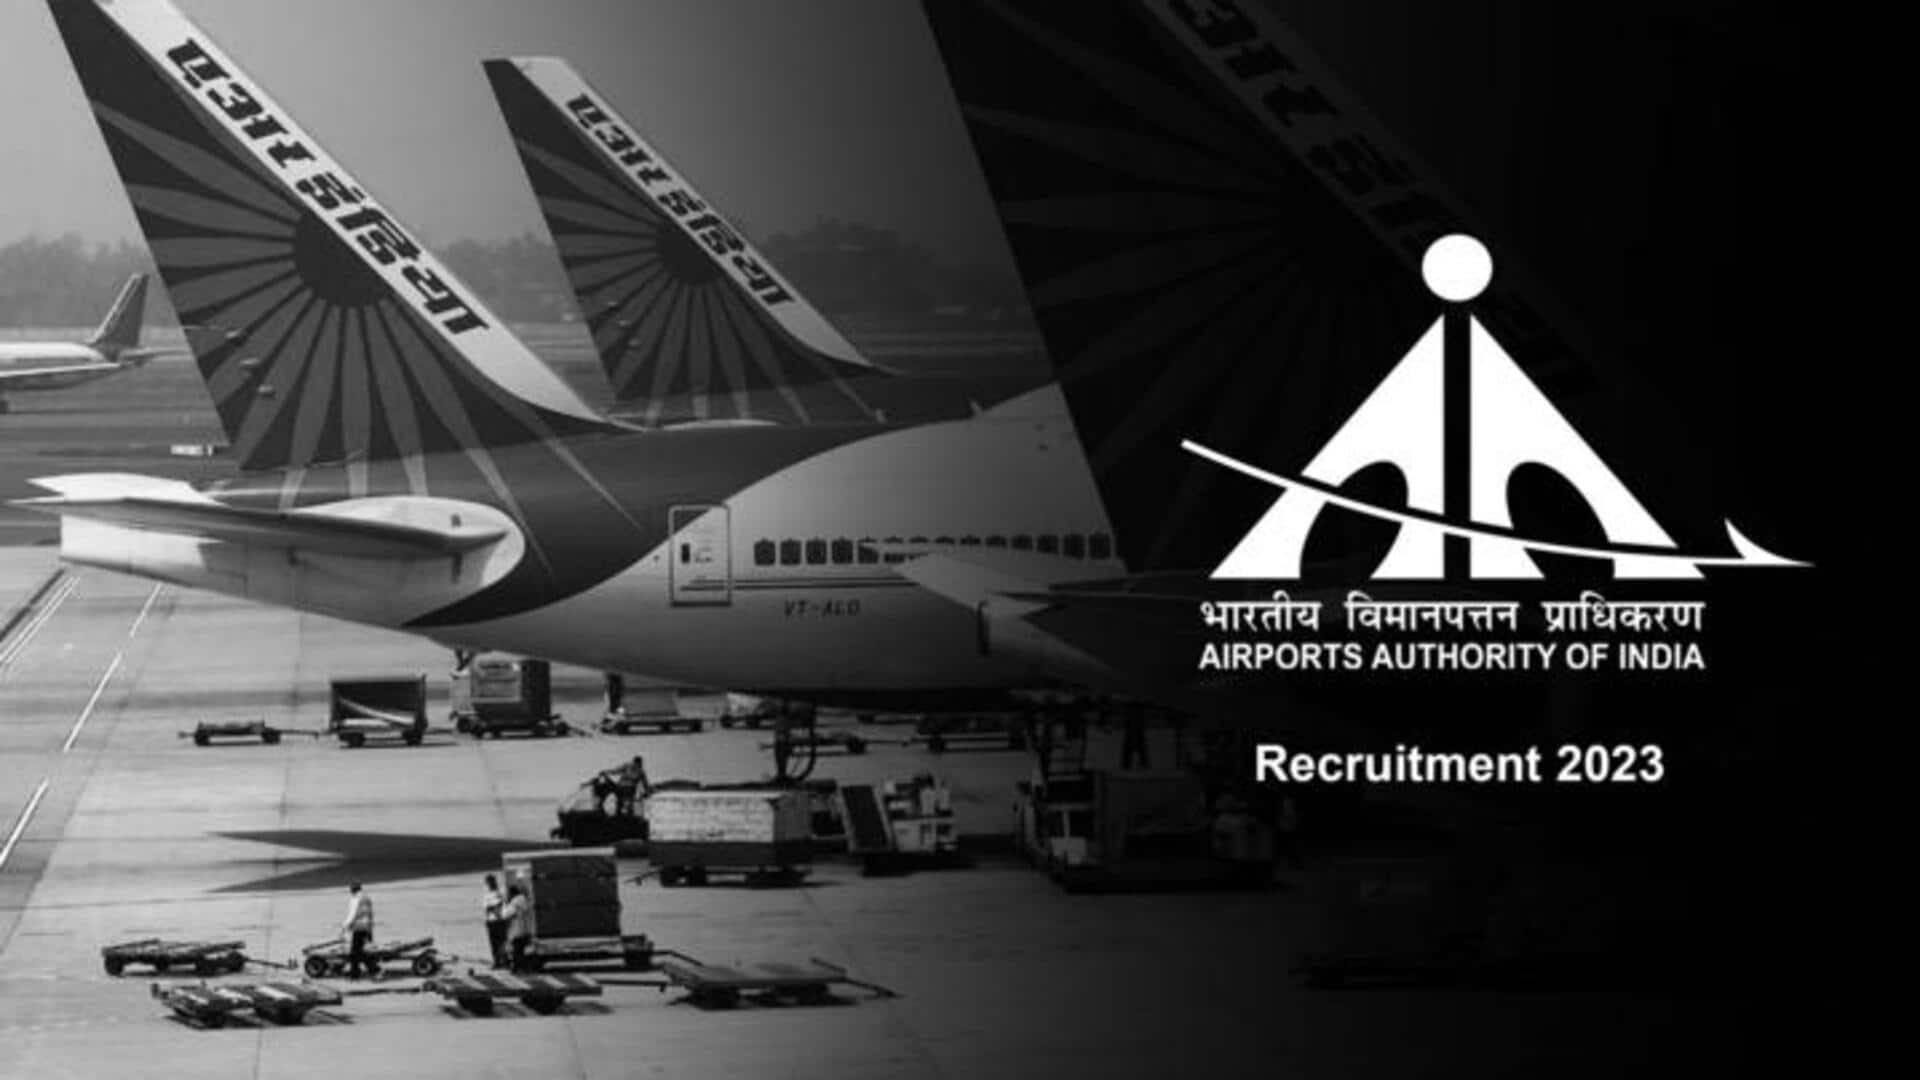 एयरपोर्ट ऑथॉरिटी ऑफ इंडिया में निकली कई पदों पर भर्ती, 5 अगस्त शुरू होगी आवेदन प्रकिया